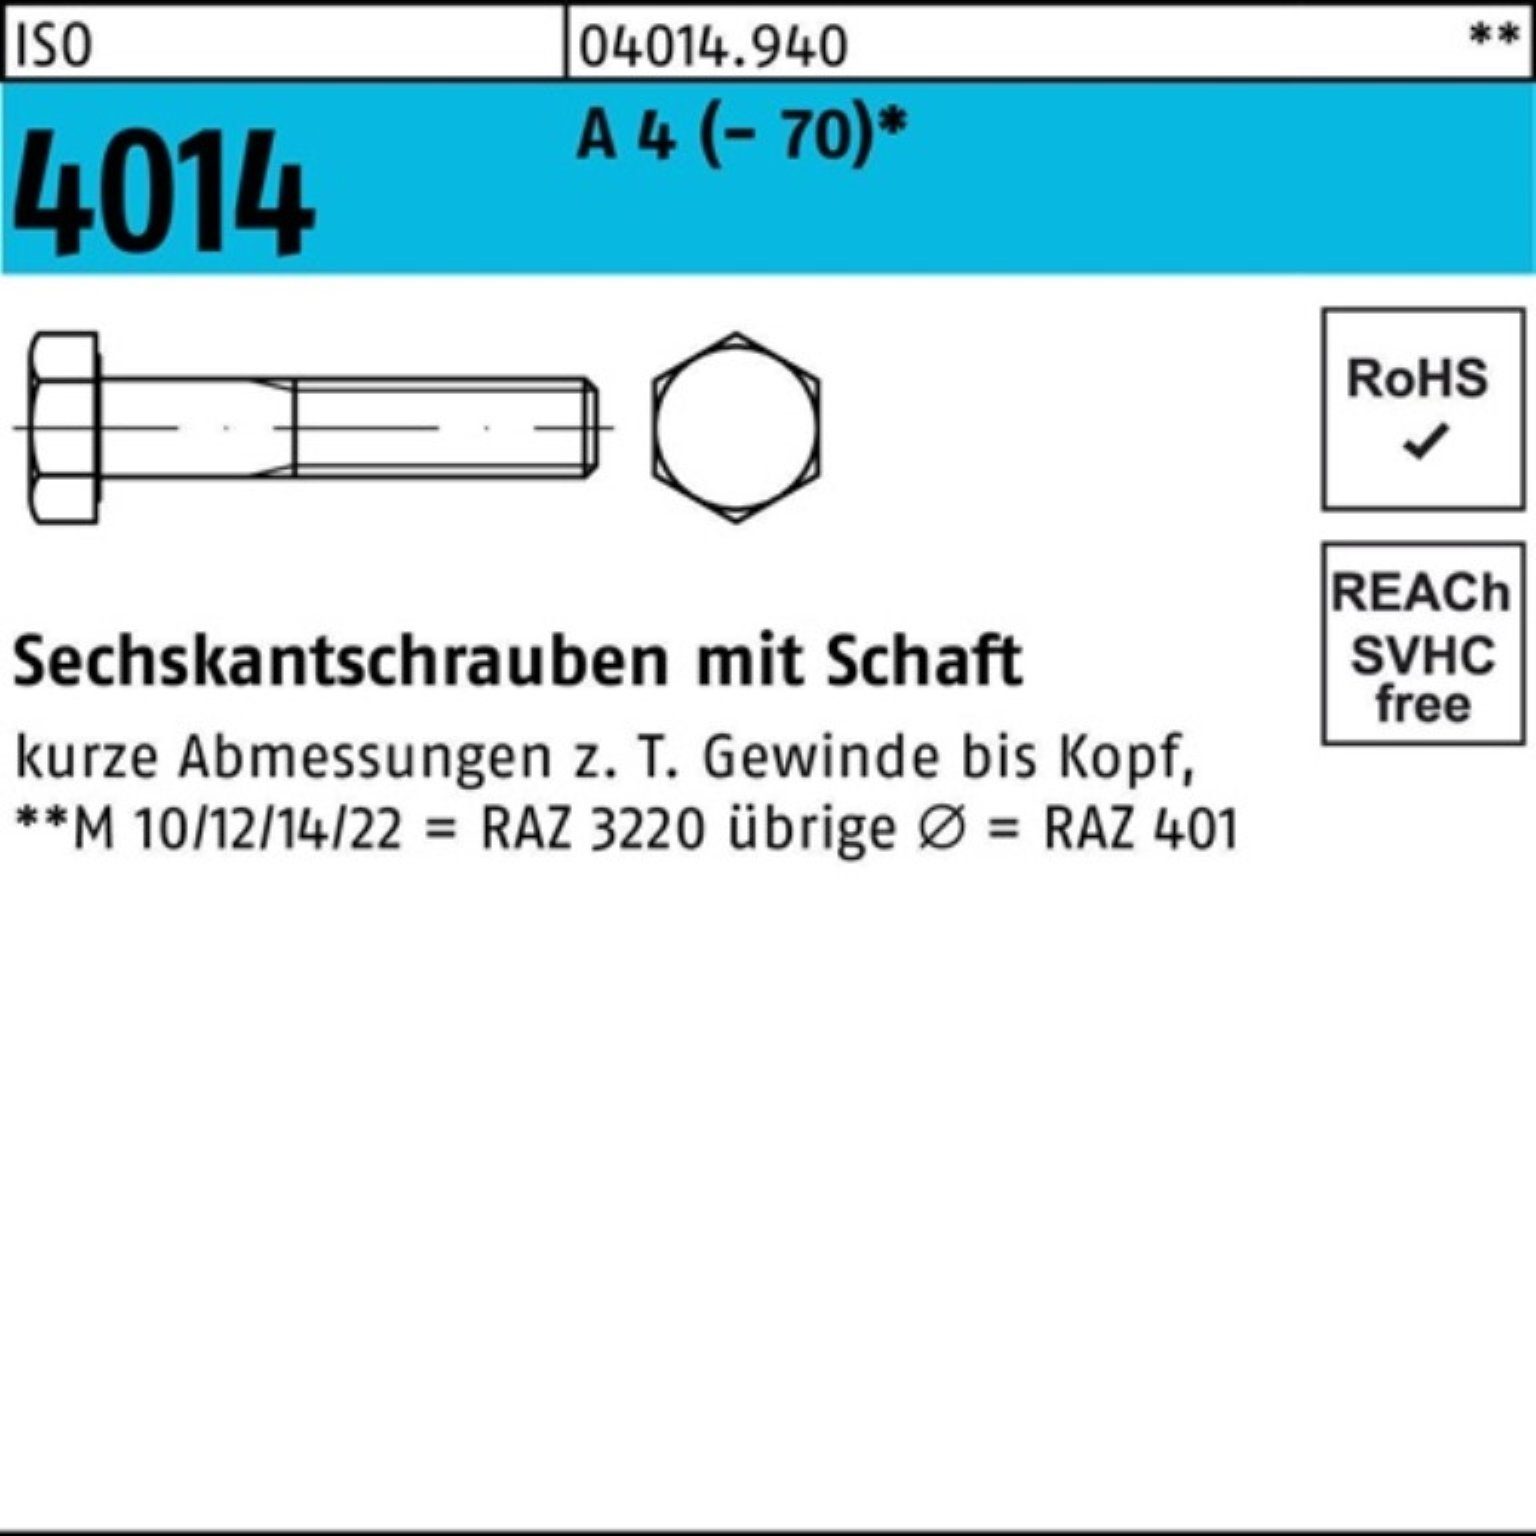 Bufab Sechskantschraube 100er 1 160 Stück Schaft Sechskantschraube A Pack ISO ISO M33x 4014 4